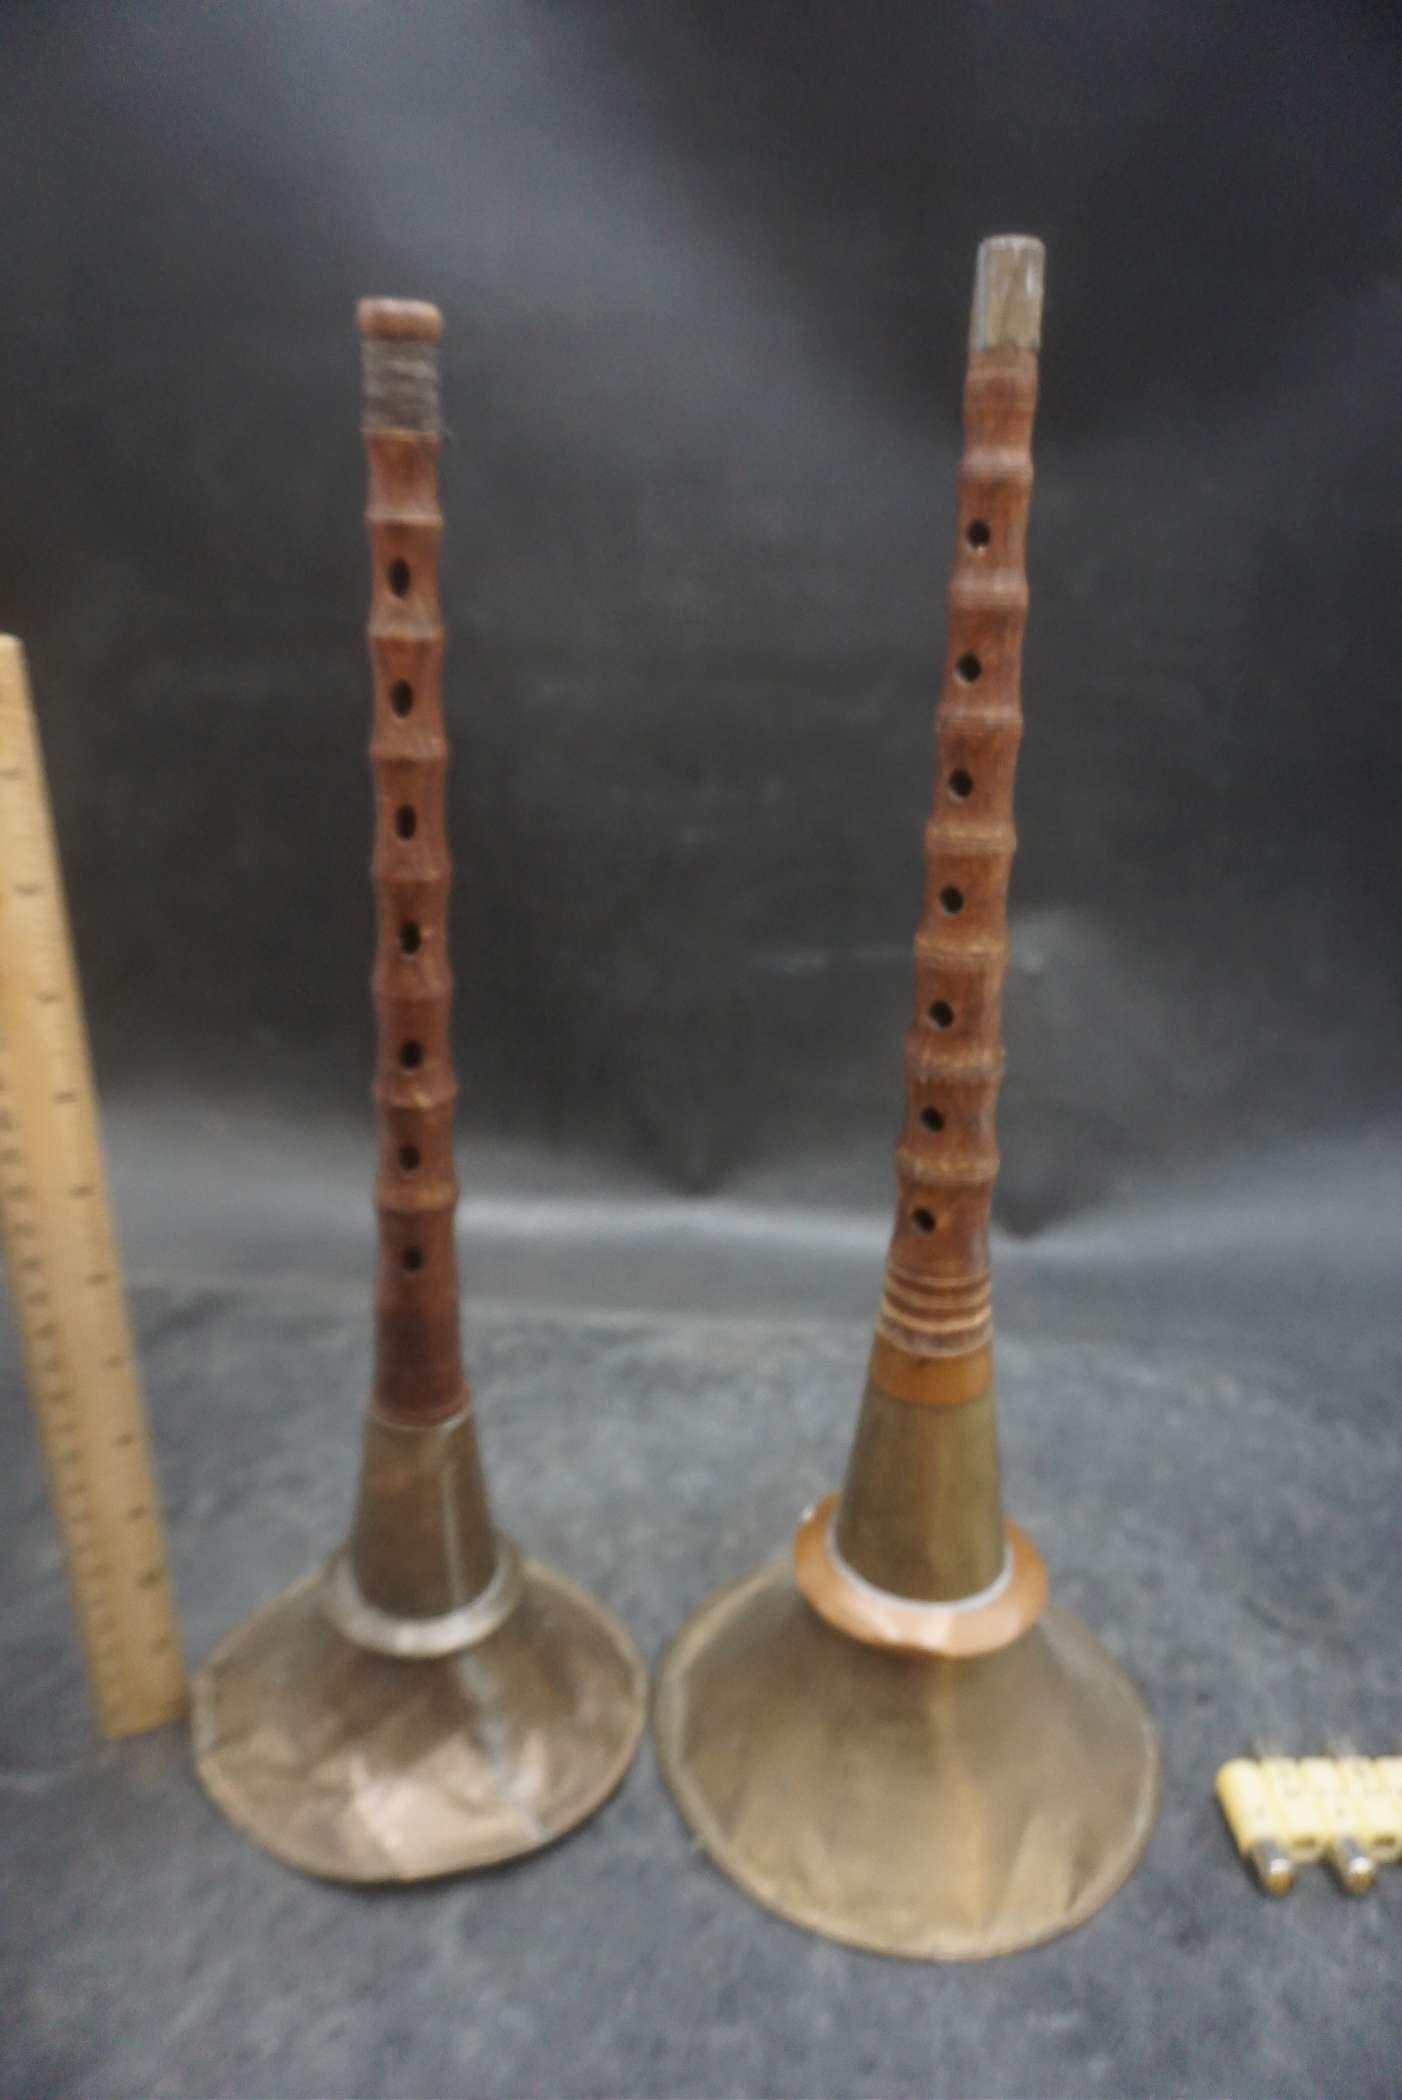 2 - Oboe/Tibet instruments